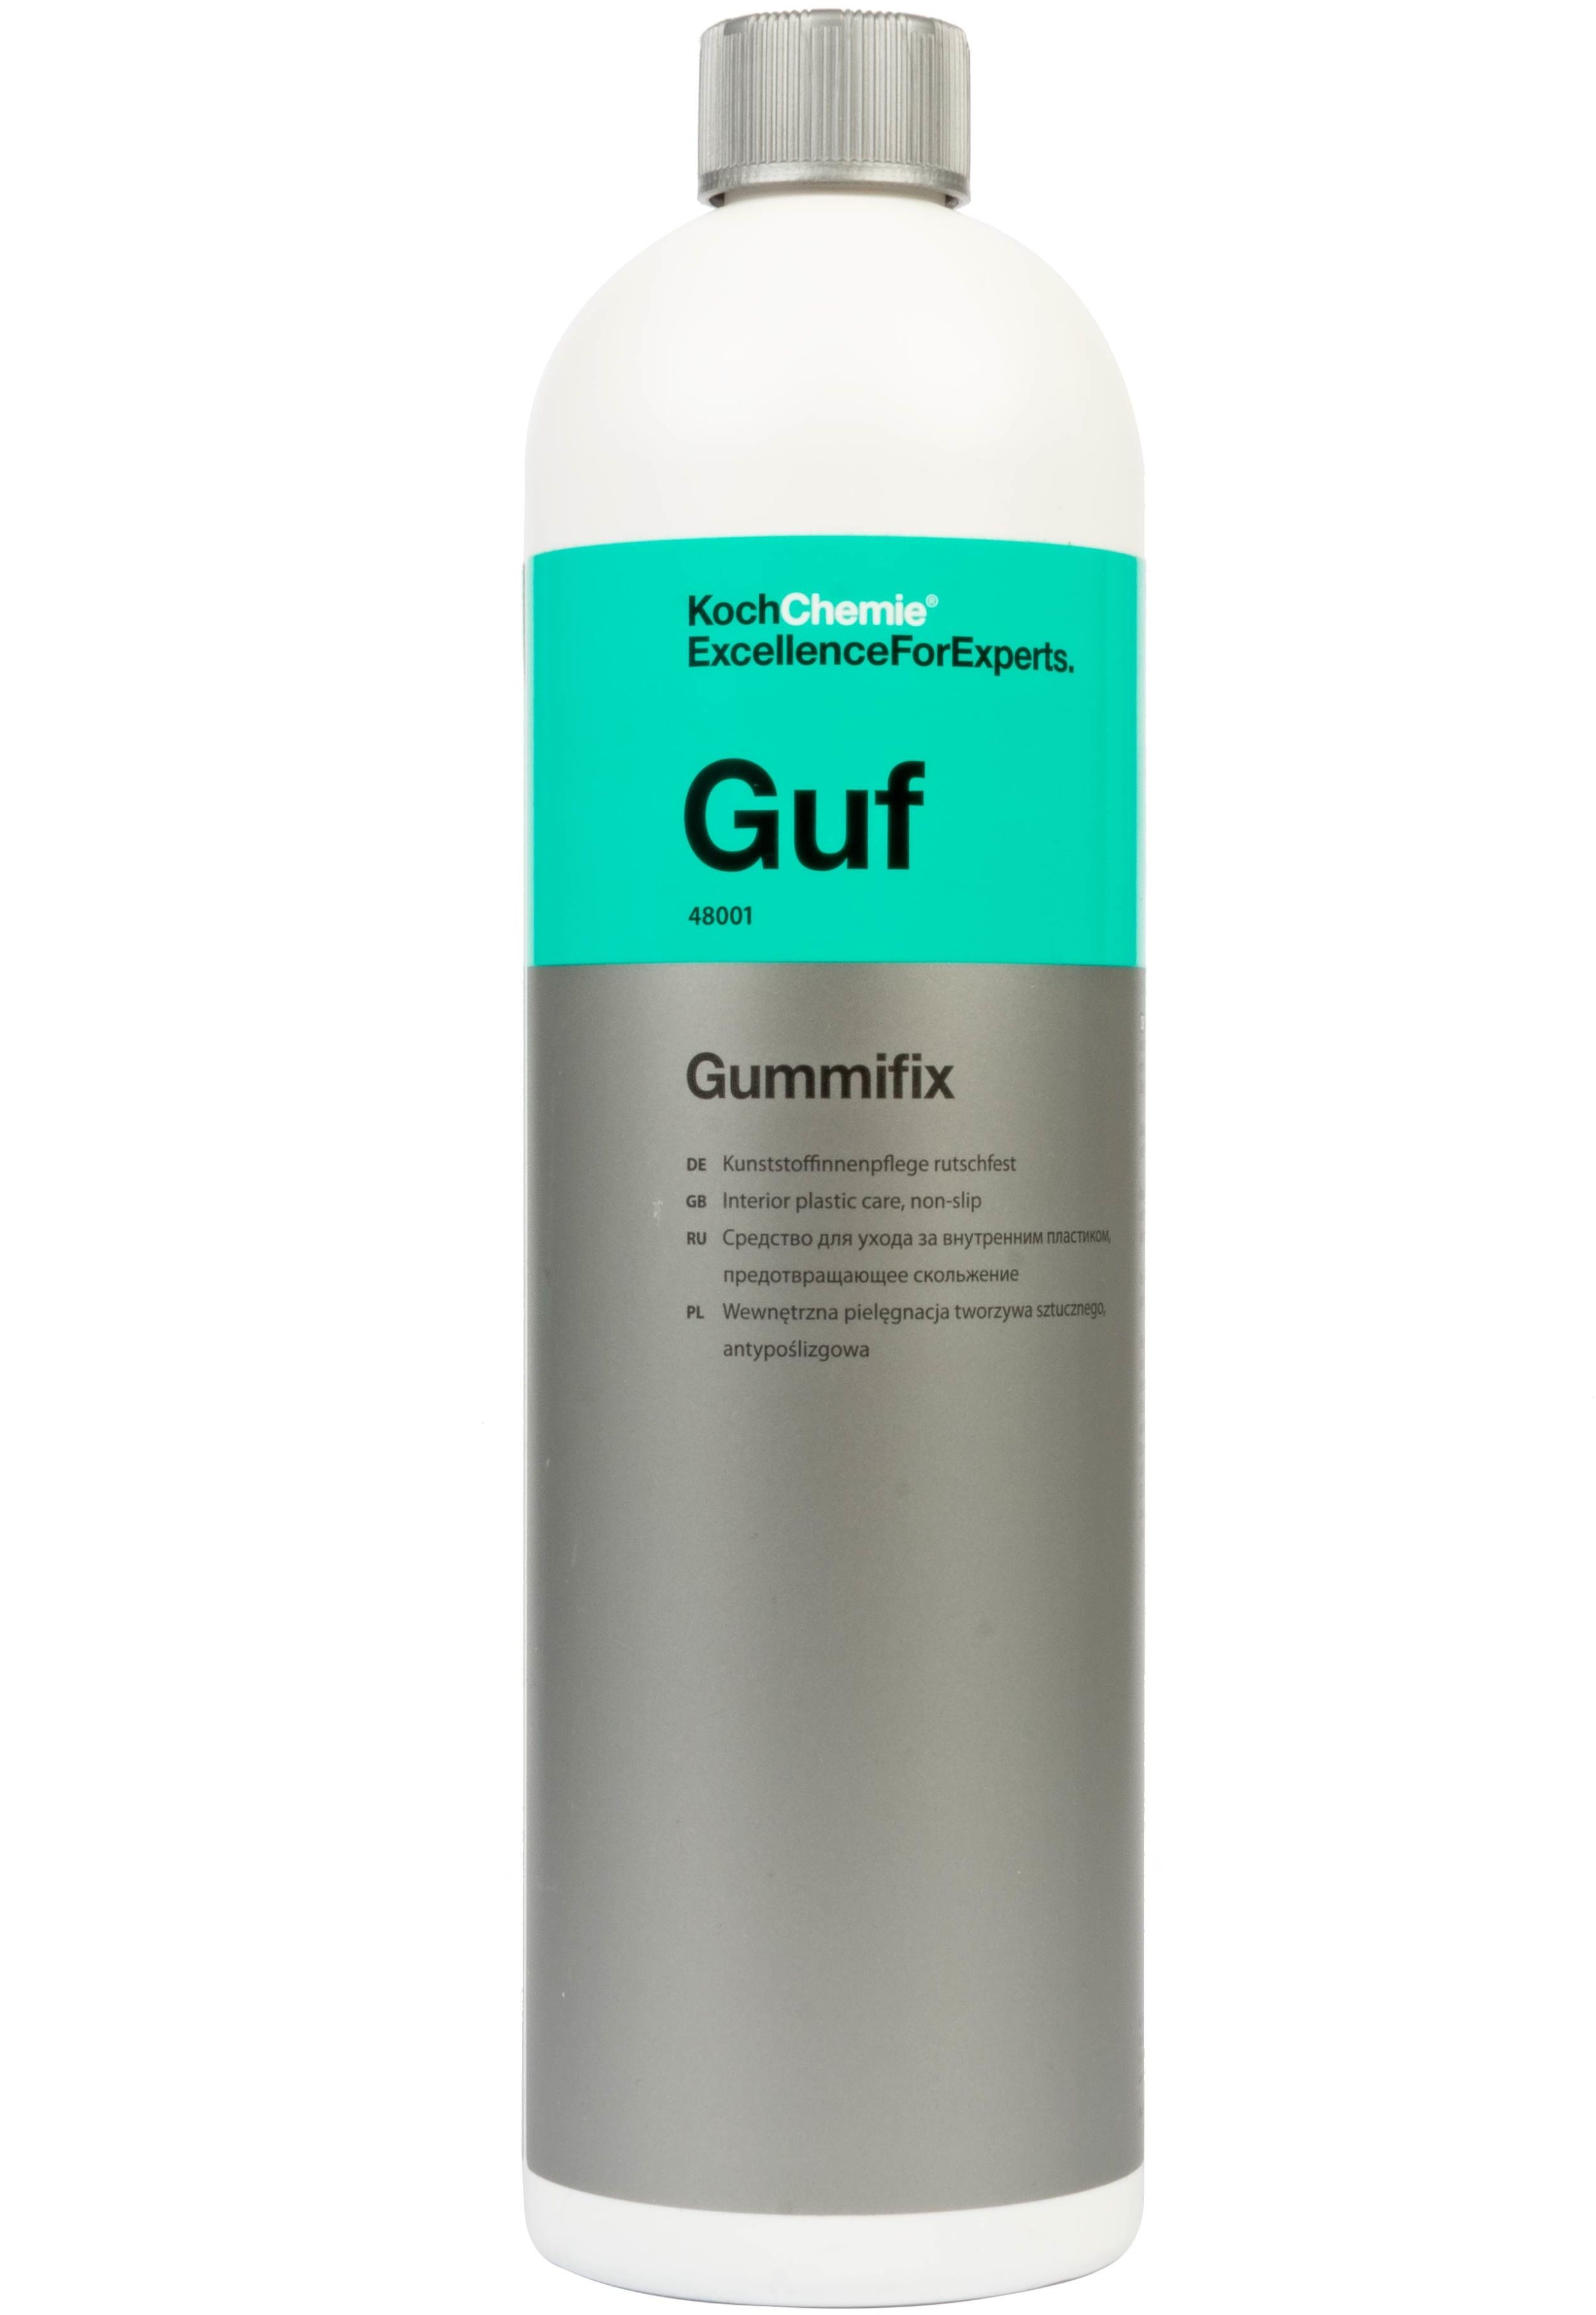 Koch chemie Koch Guf Gummifix  produkt do pielęgnacji gumy i tworzyw sztucznych 1l Koc000097